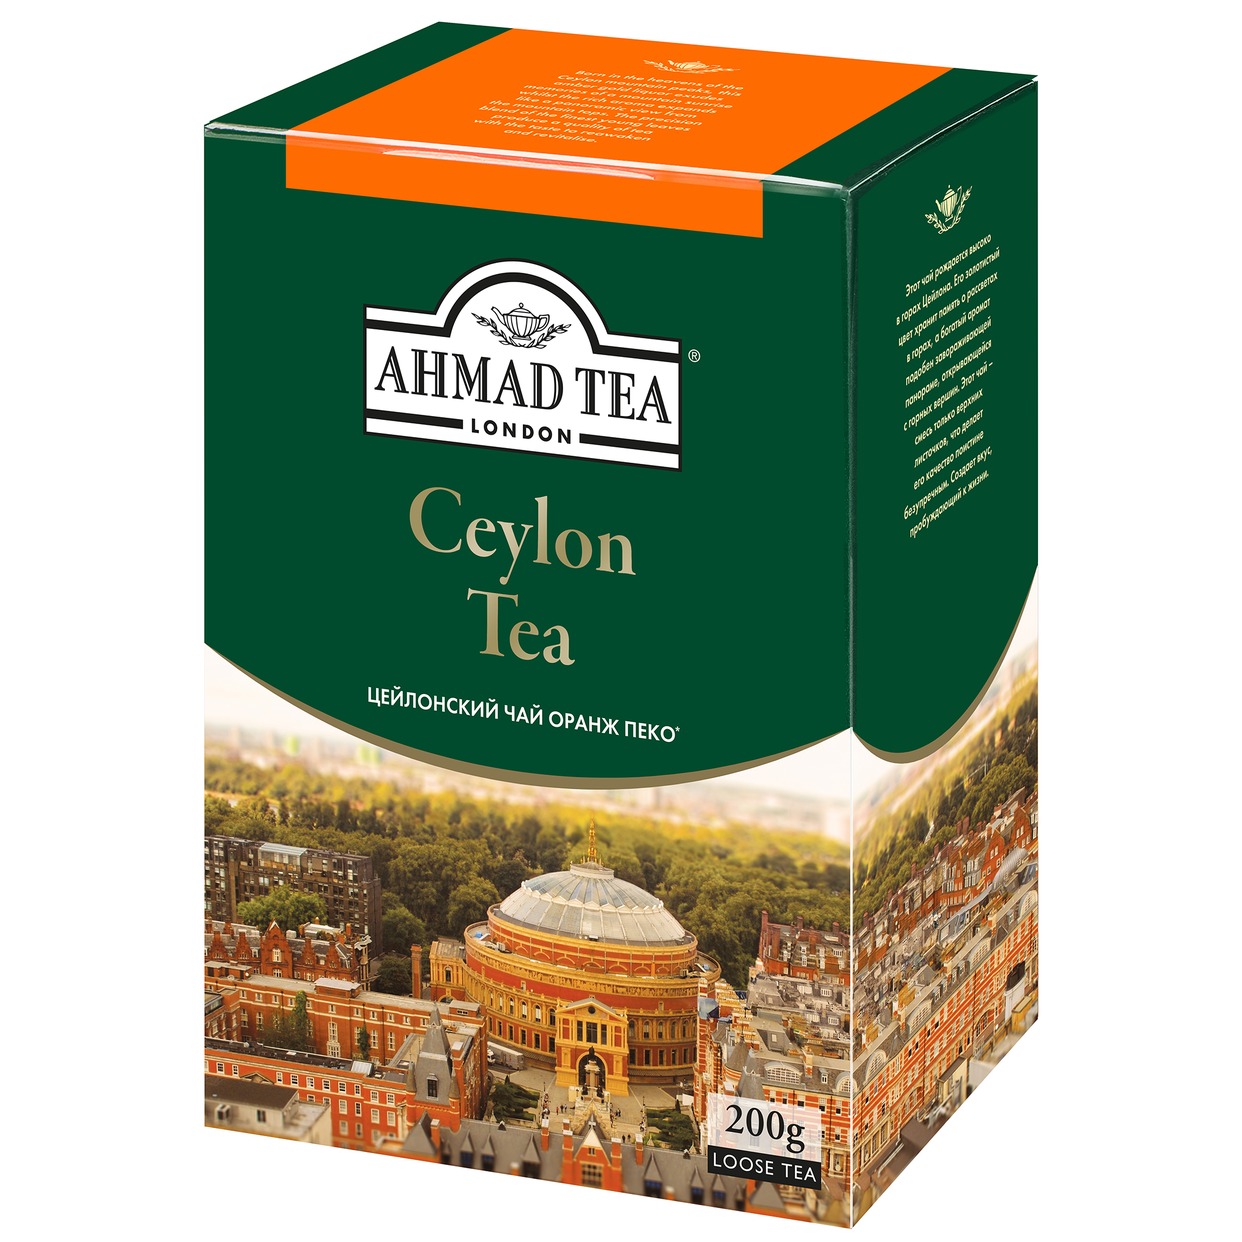 Чай Ahmad Tea Ceylon Orient, черный, 200 г по акции в Пятерочке